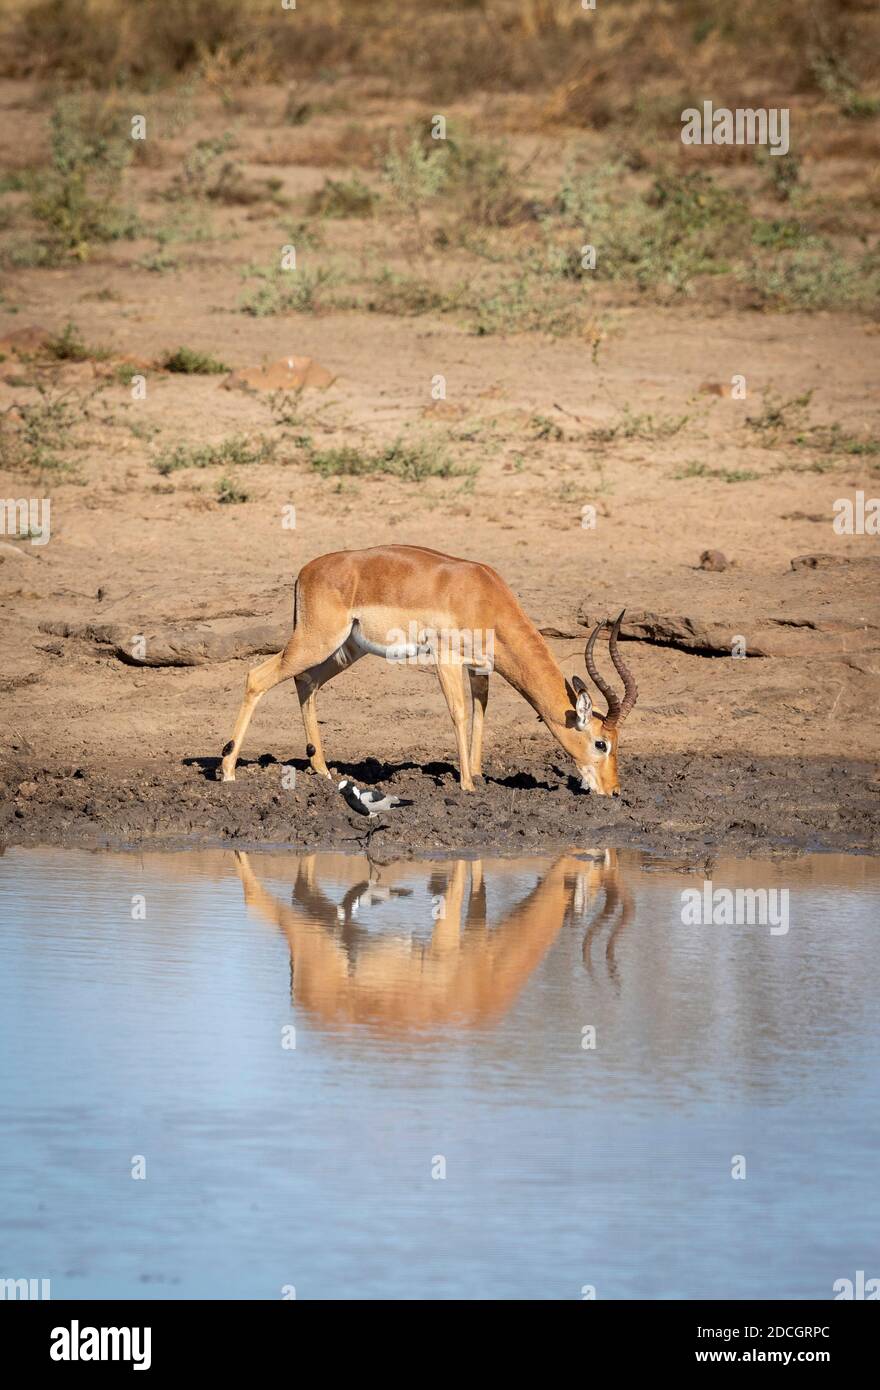 Reflet d'eau d'un homme impala buvant dans le parc Kruger En Afrique du Sud Banque D'Images